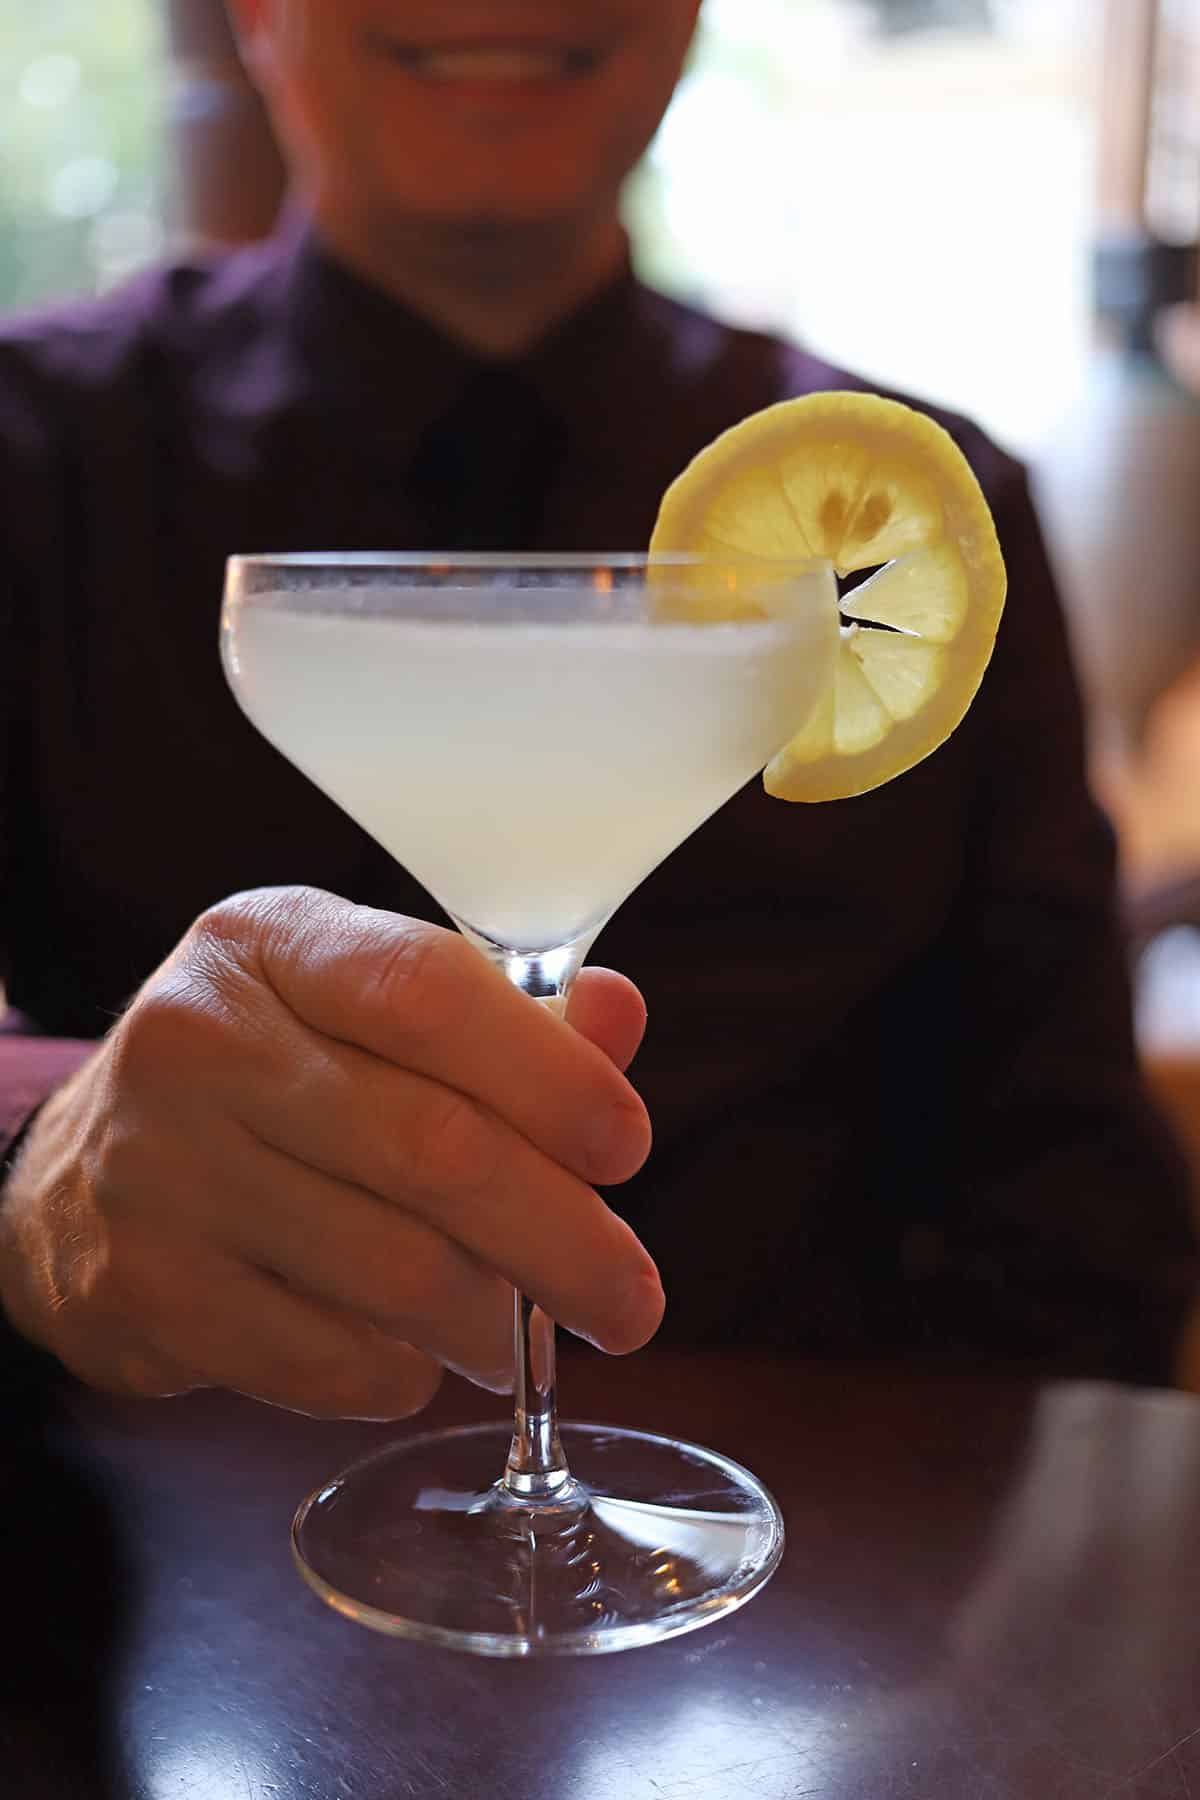 Hand holding lemon cocktail.